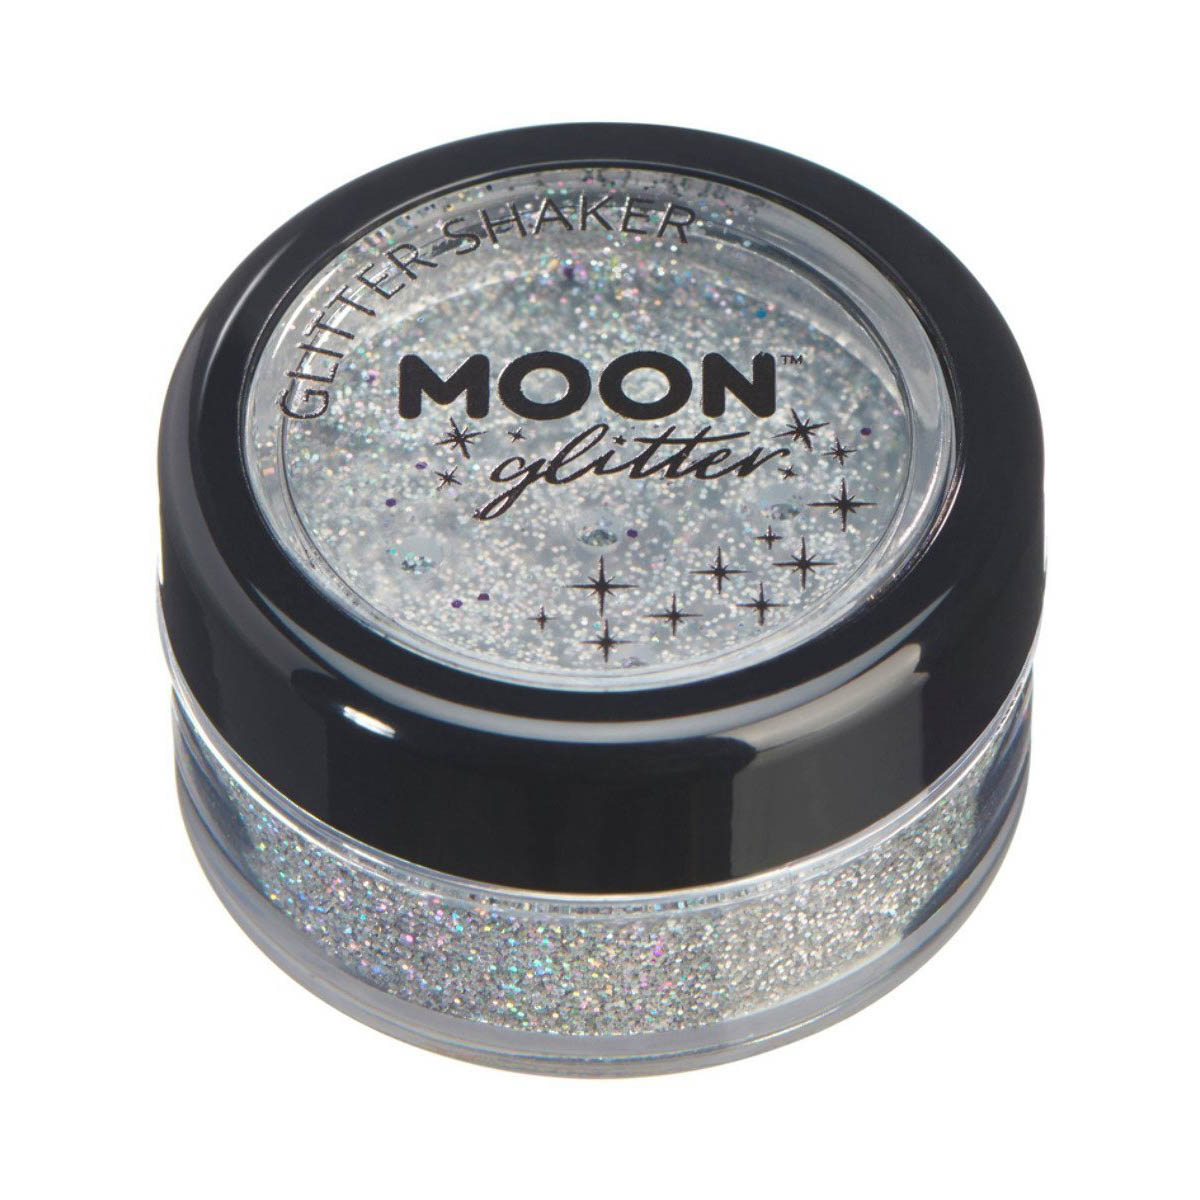 Moon glitter i shaker burk, holografisk 5g Silver